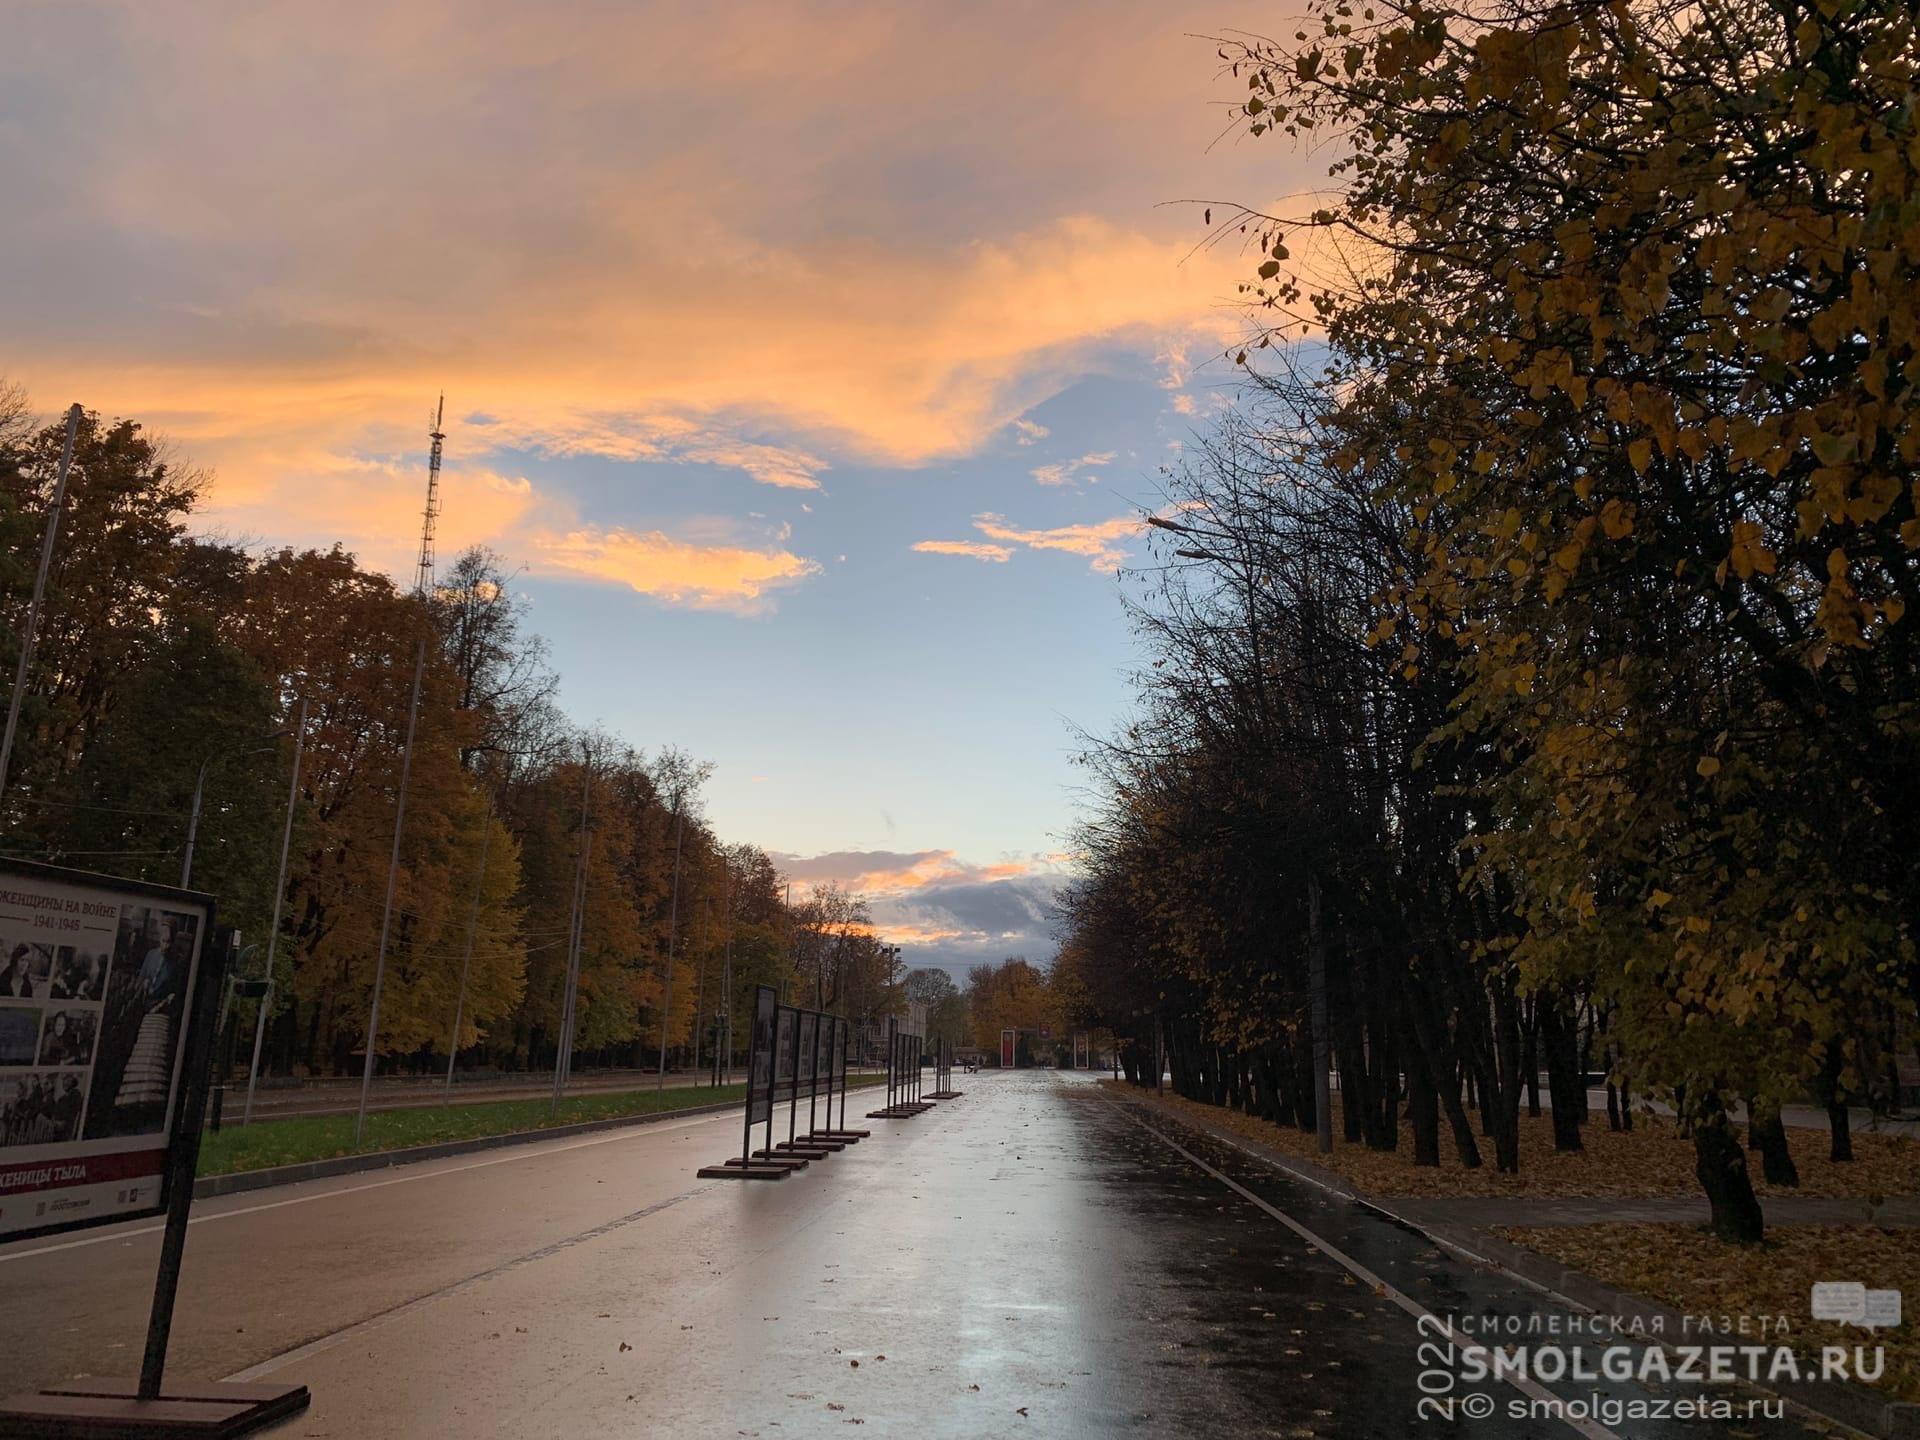 25 октября в Смоленской области местами пройдет небольшой дождь